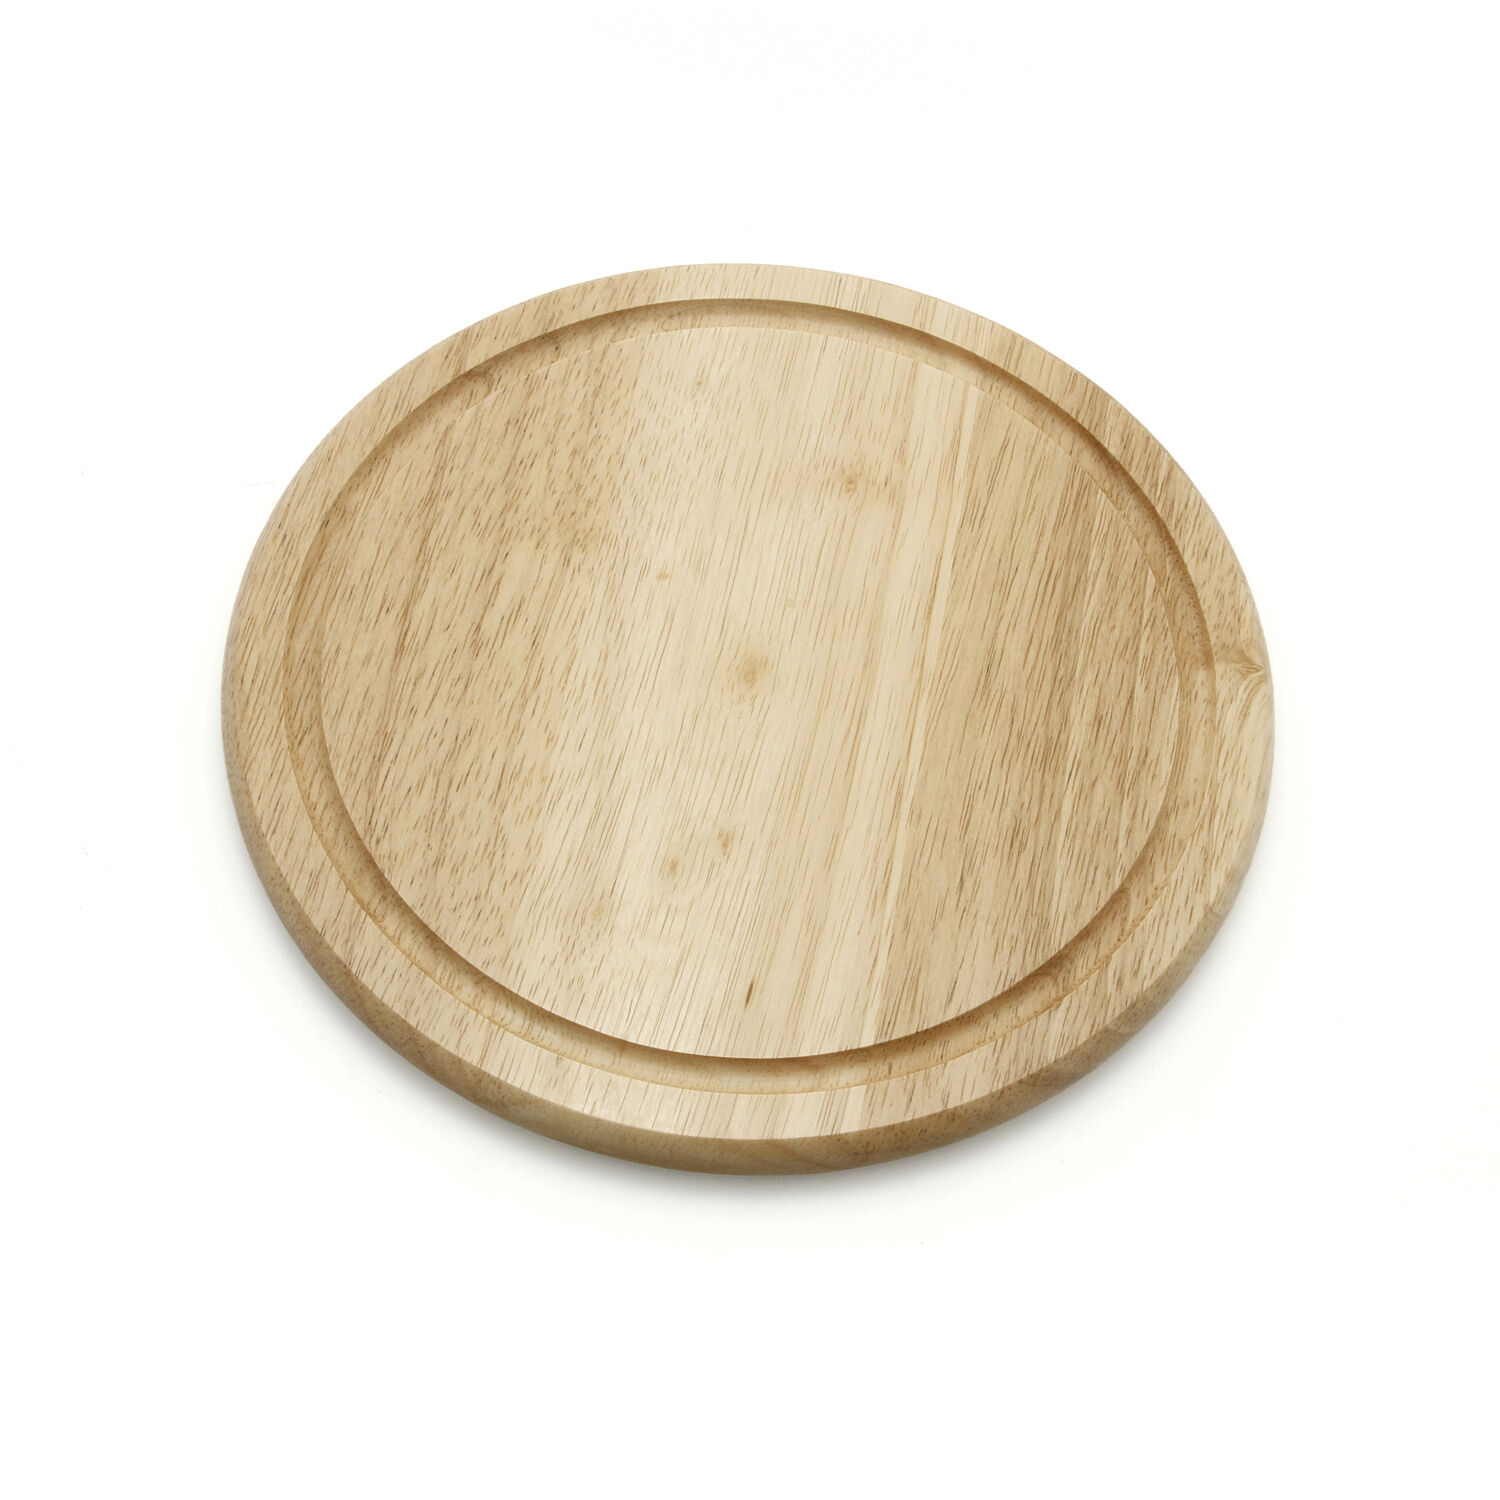 Apollo Rubberwood Round Bread Board Brown Wood 25.2 x 12.9 x 0.5 cm 